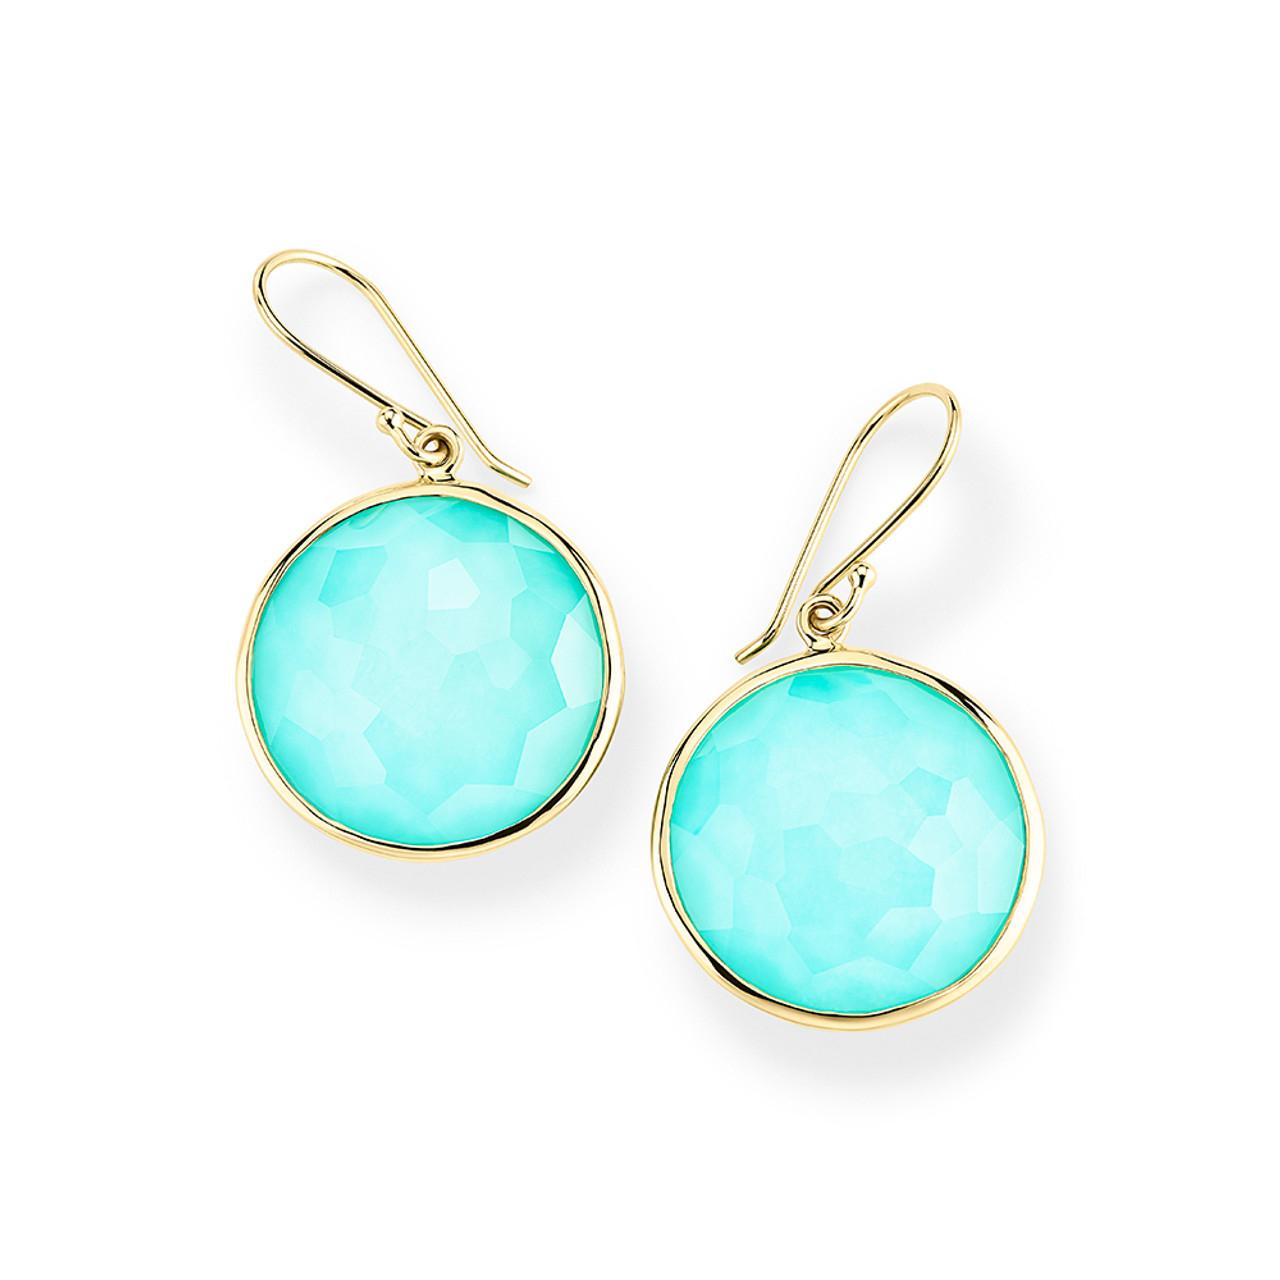 Ippolita Lollipop Turquoise Drop Earrings in 18k Gold